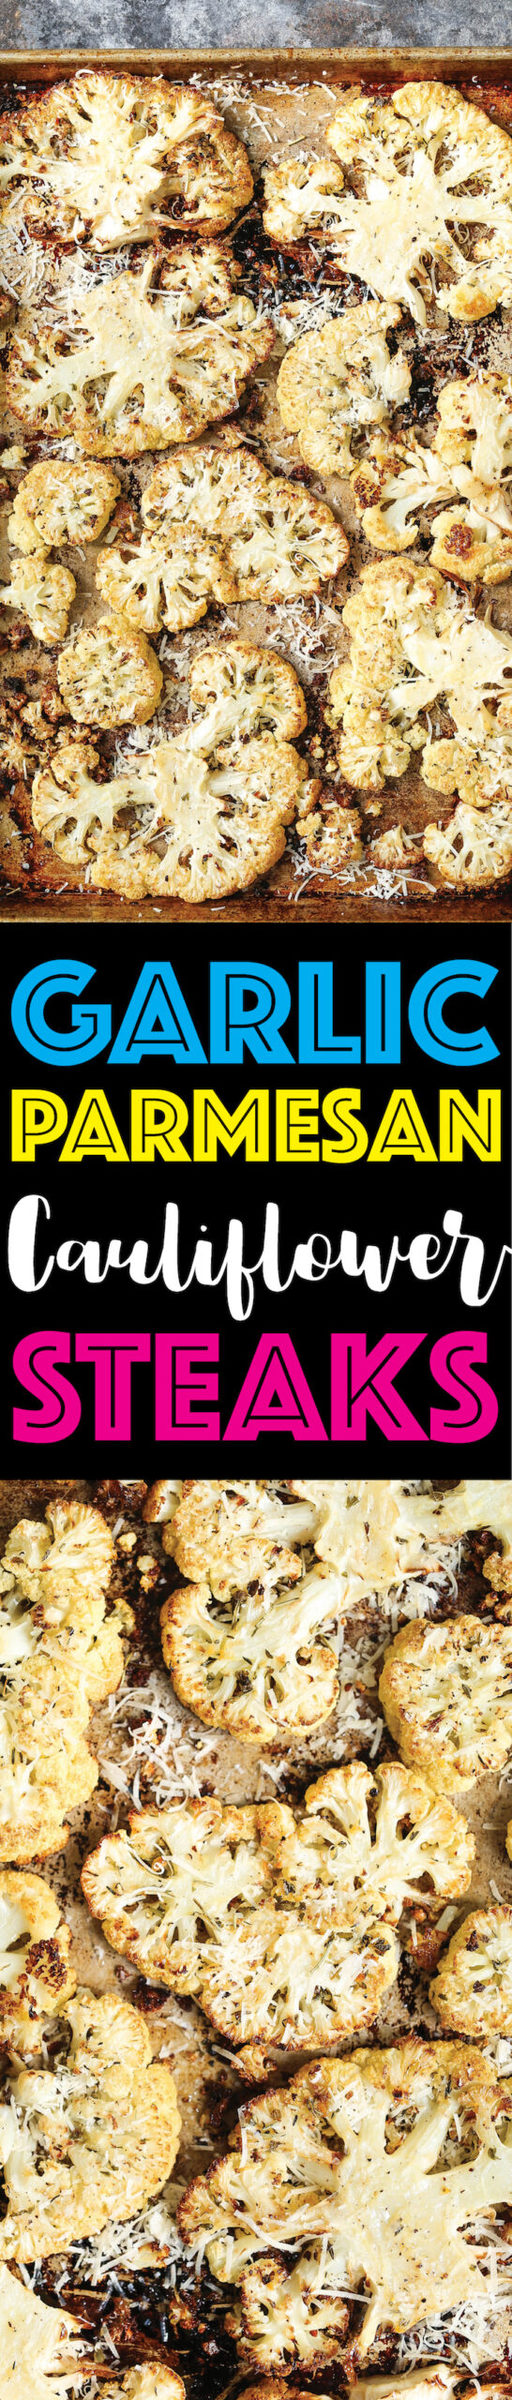 Garlic Parmesan Cauliflower Steaks